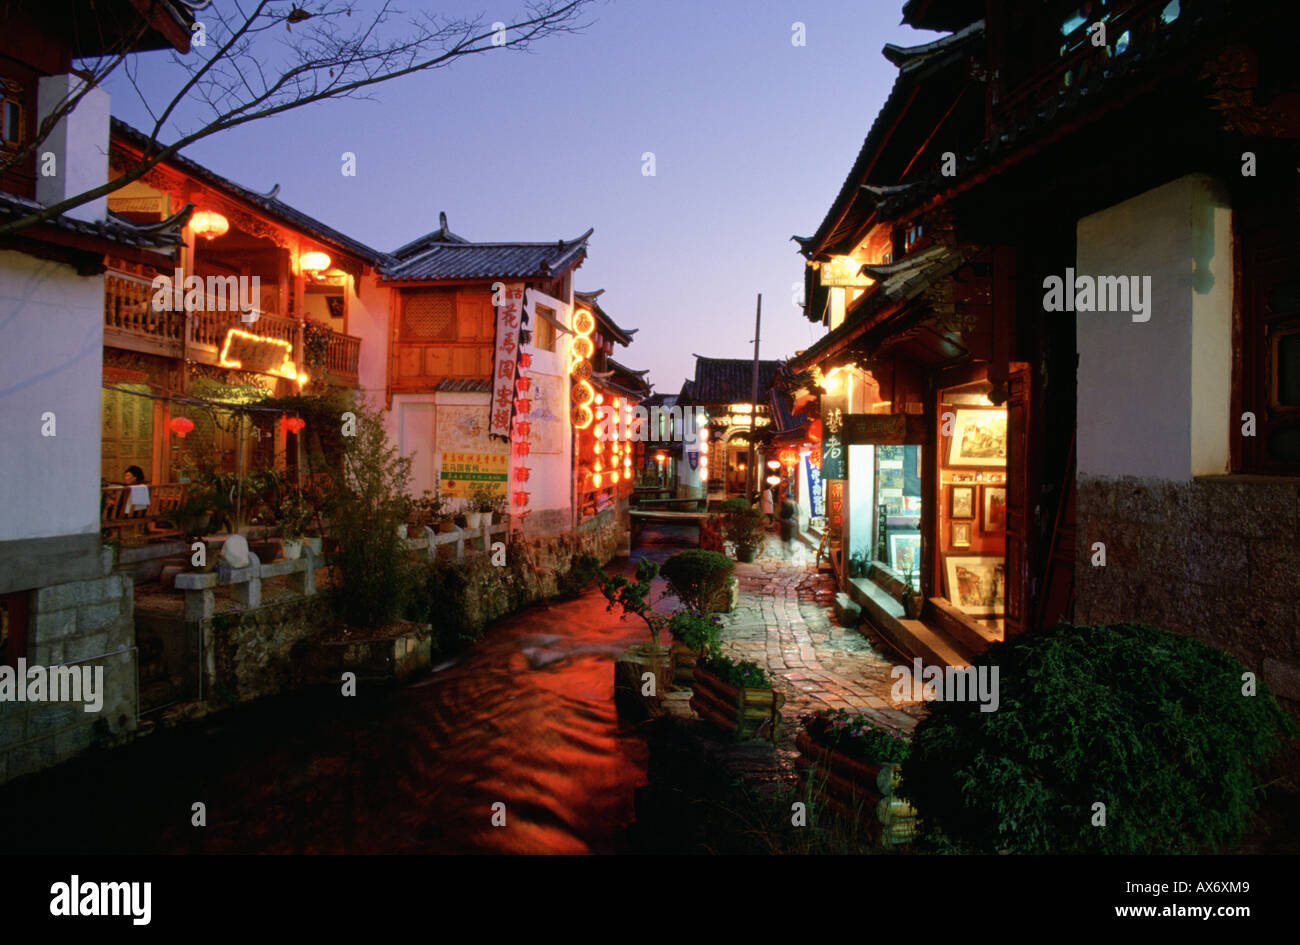 Geschäfte und Restaurants entlang einem Stein gepflasterten Straße in Lijiang in der Nacht, Lampions von den Geschäften hängen Stockfoto